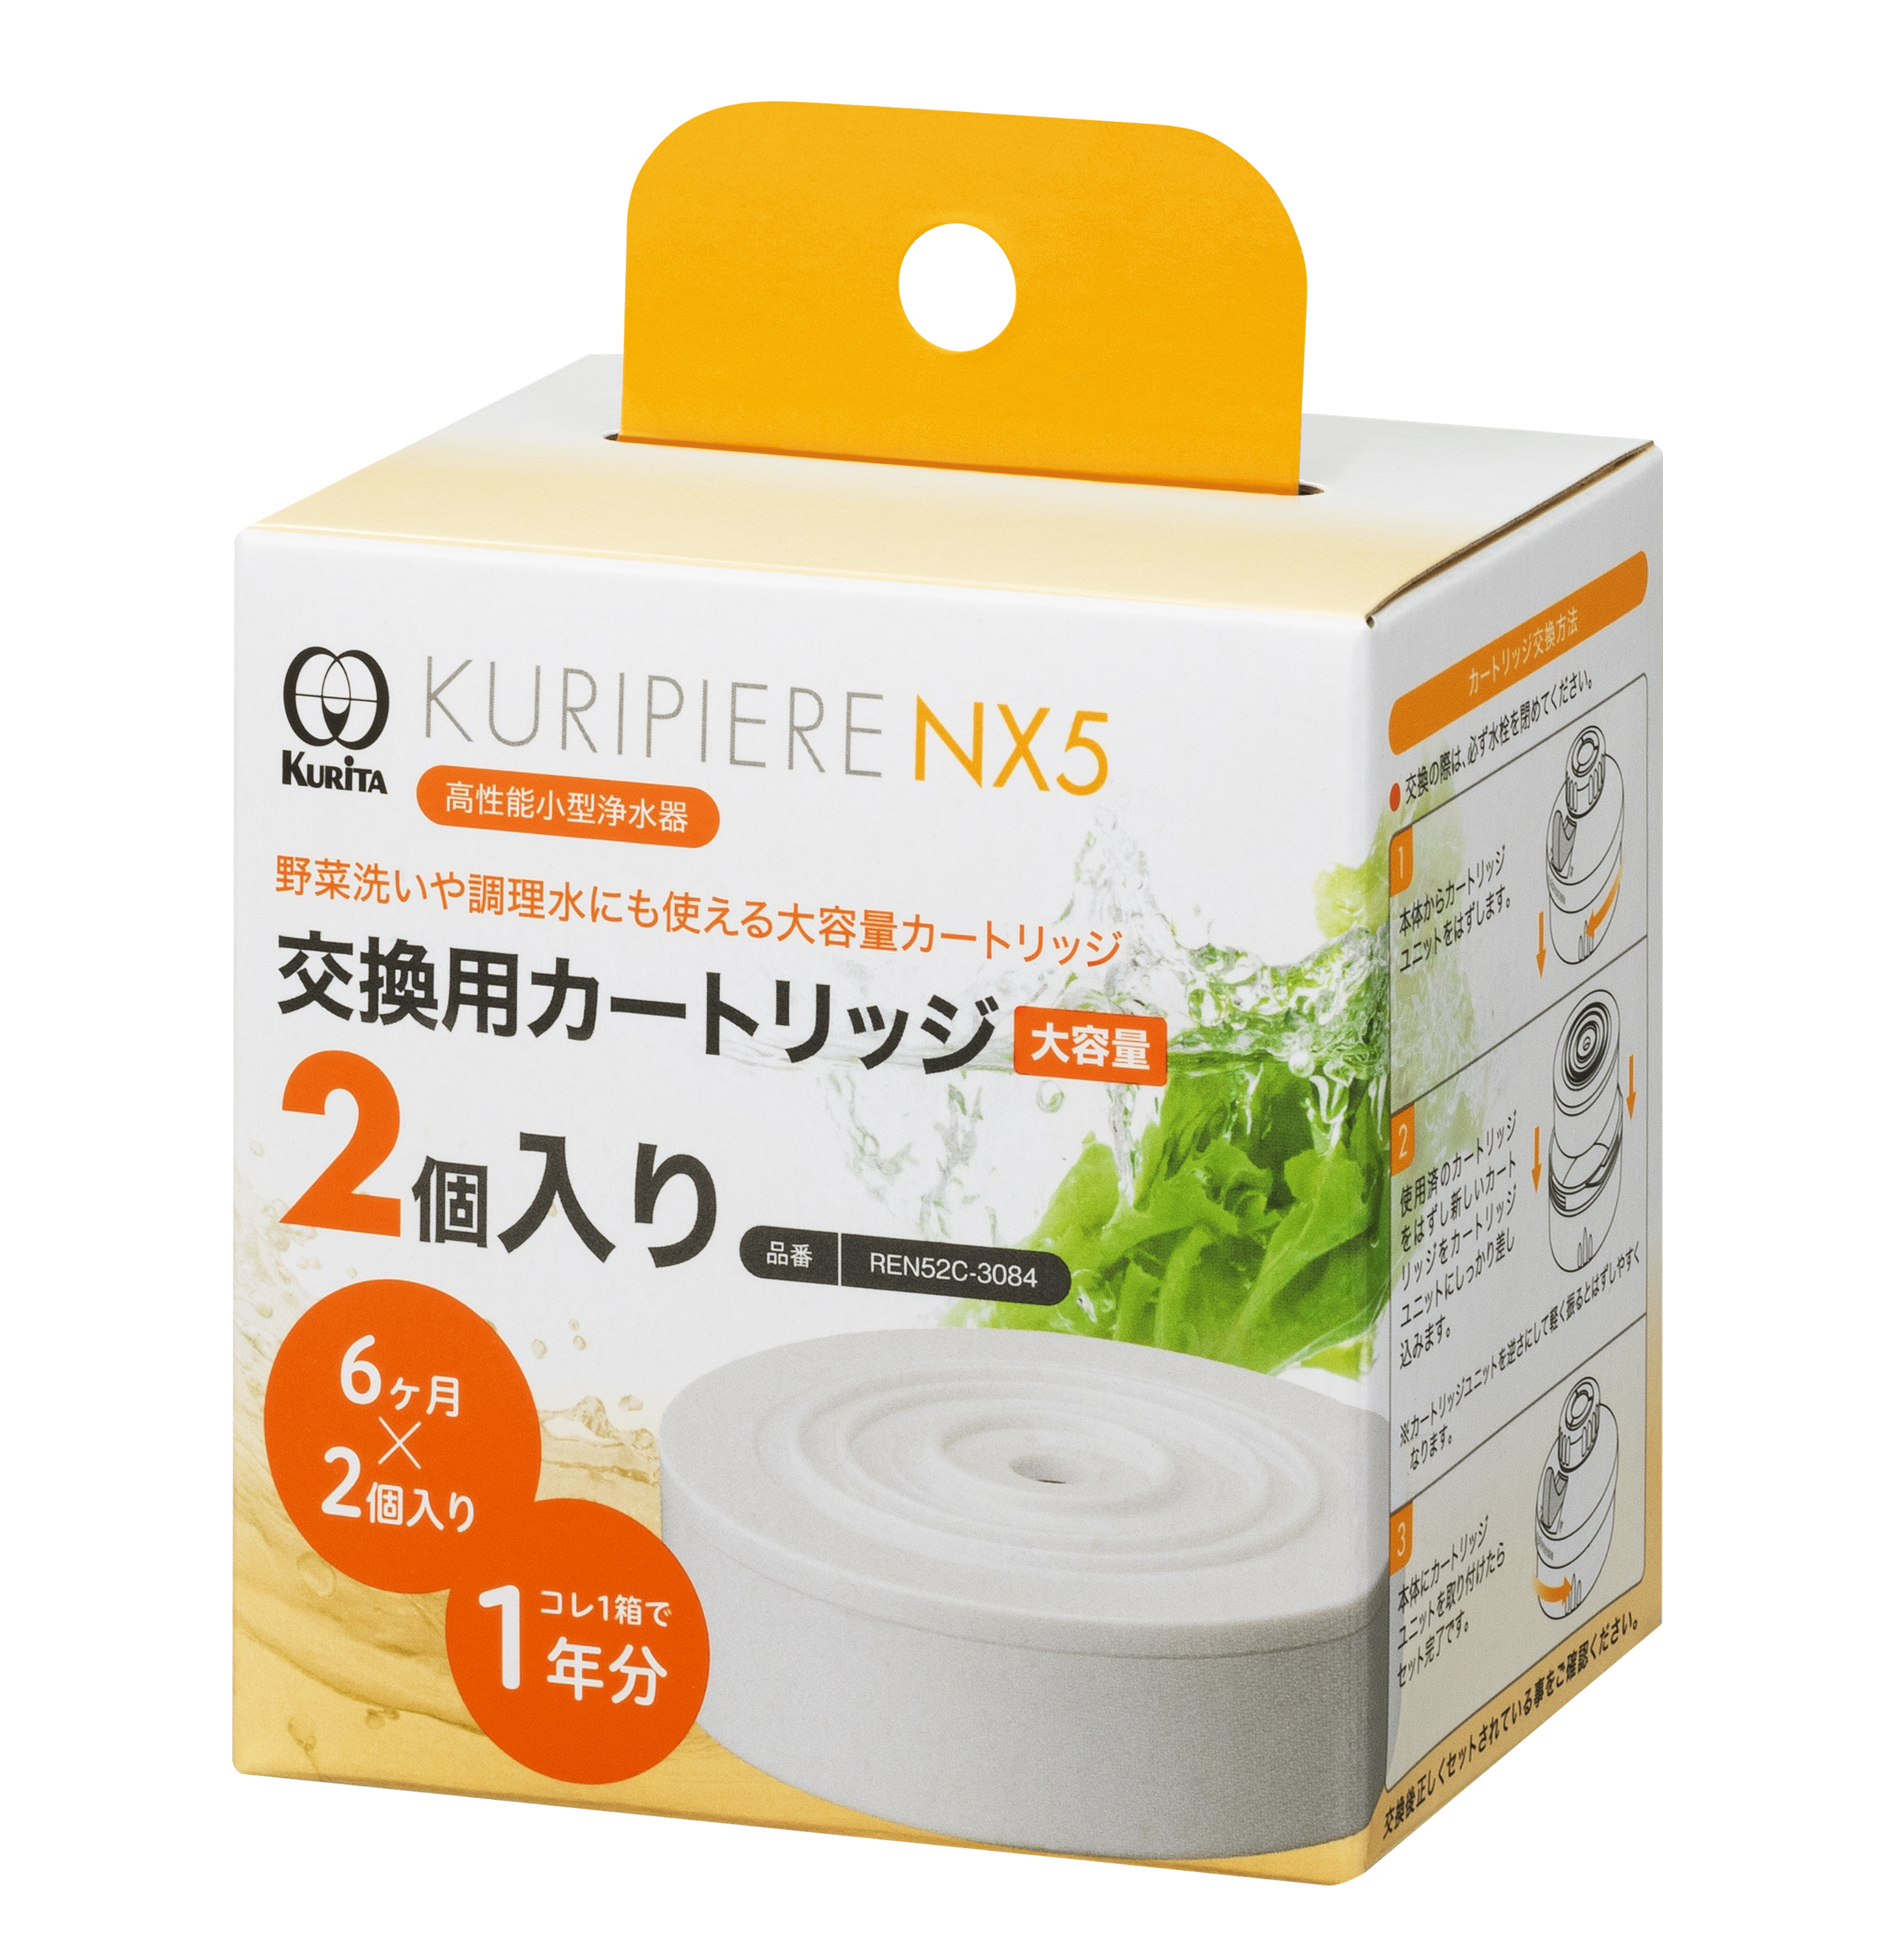 クリタック(Kurita) コンパクト浄水器 クリピーレ NX5 首ふりタイプ REN5SW-3076 ホワイト 通販 